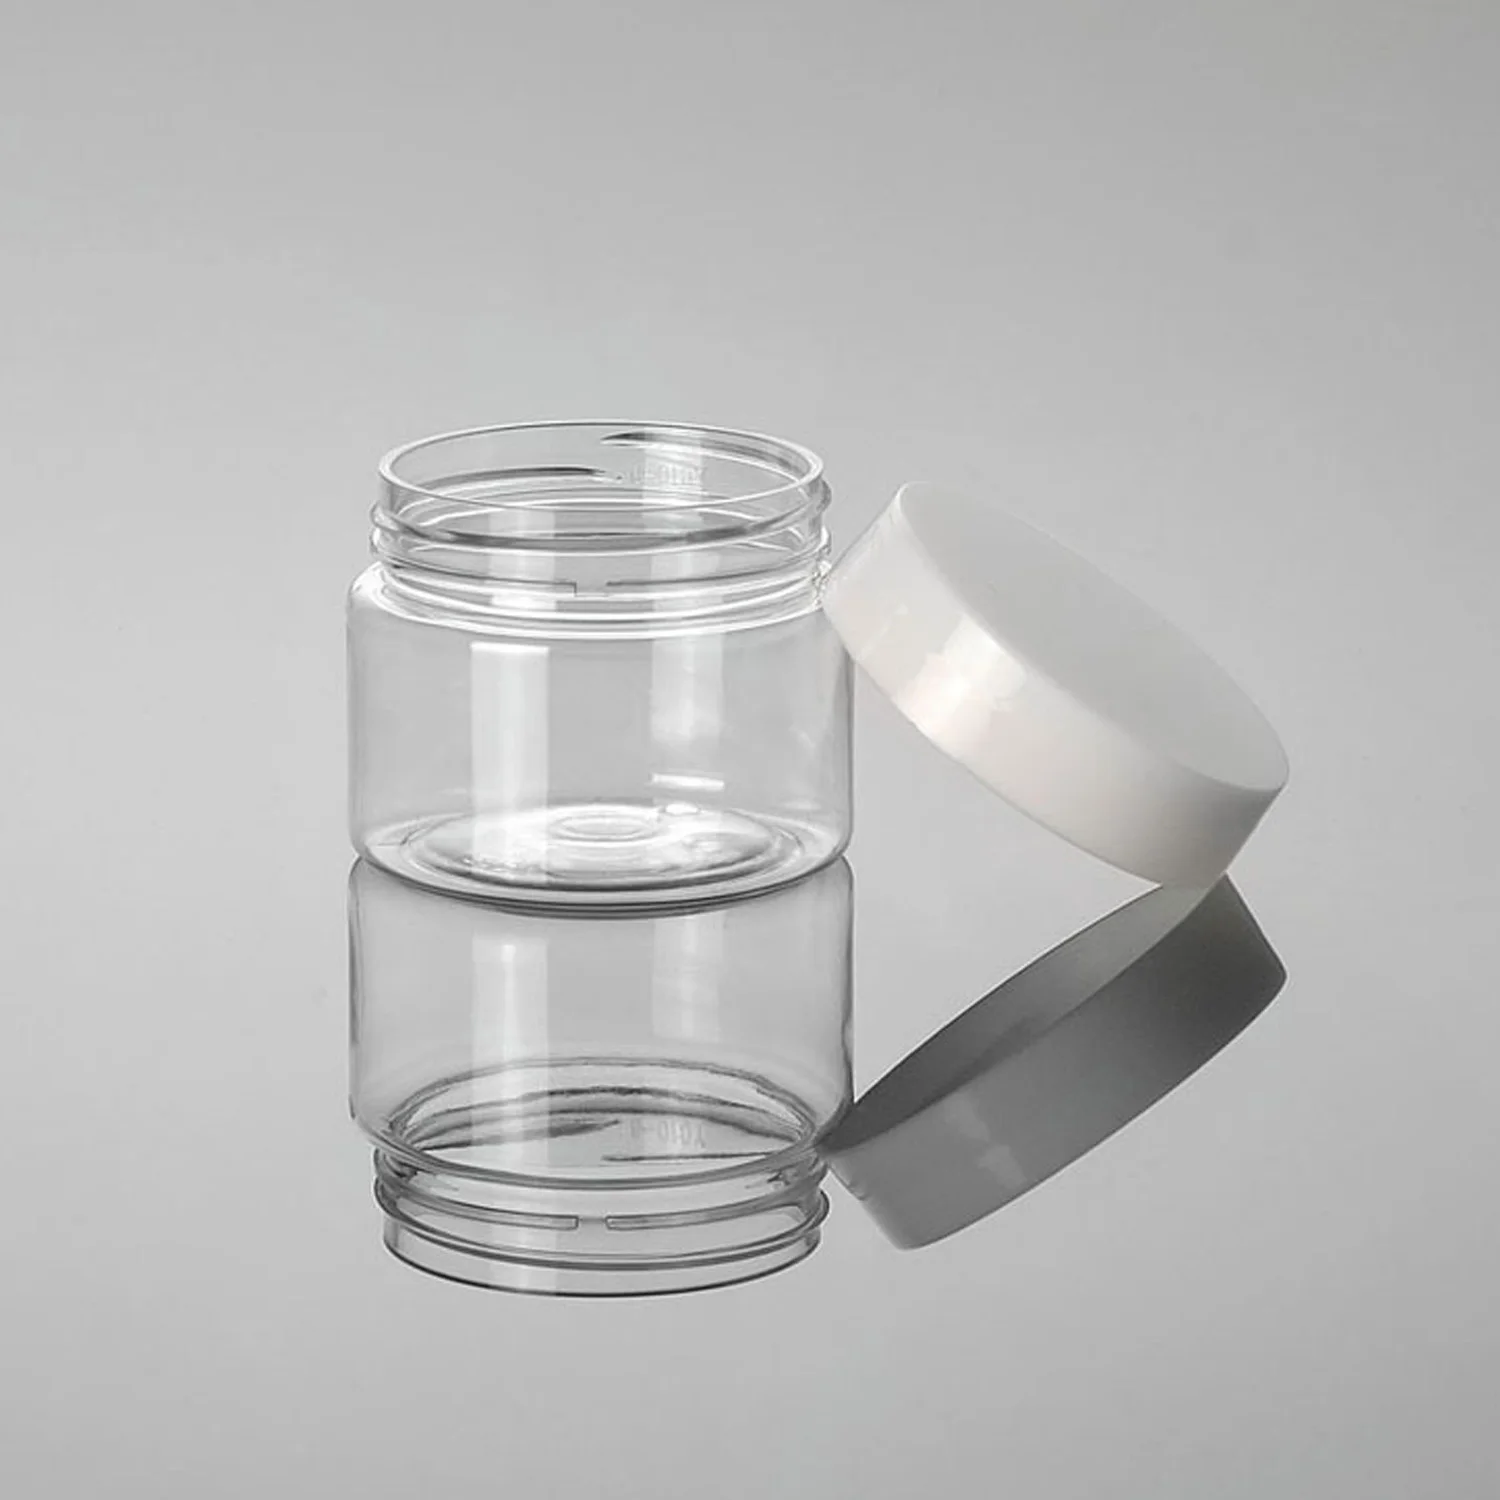 Пустые прозрачные пластиковые контейнеры для хранения с широким горлышком и